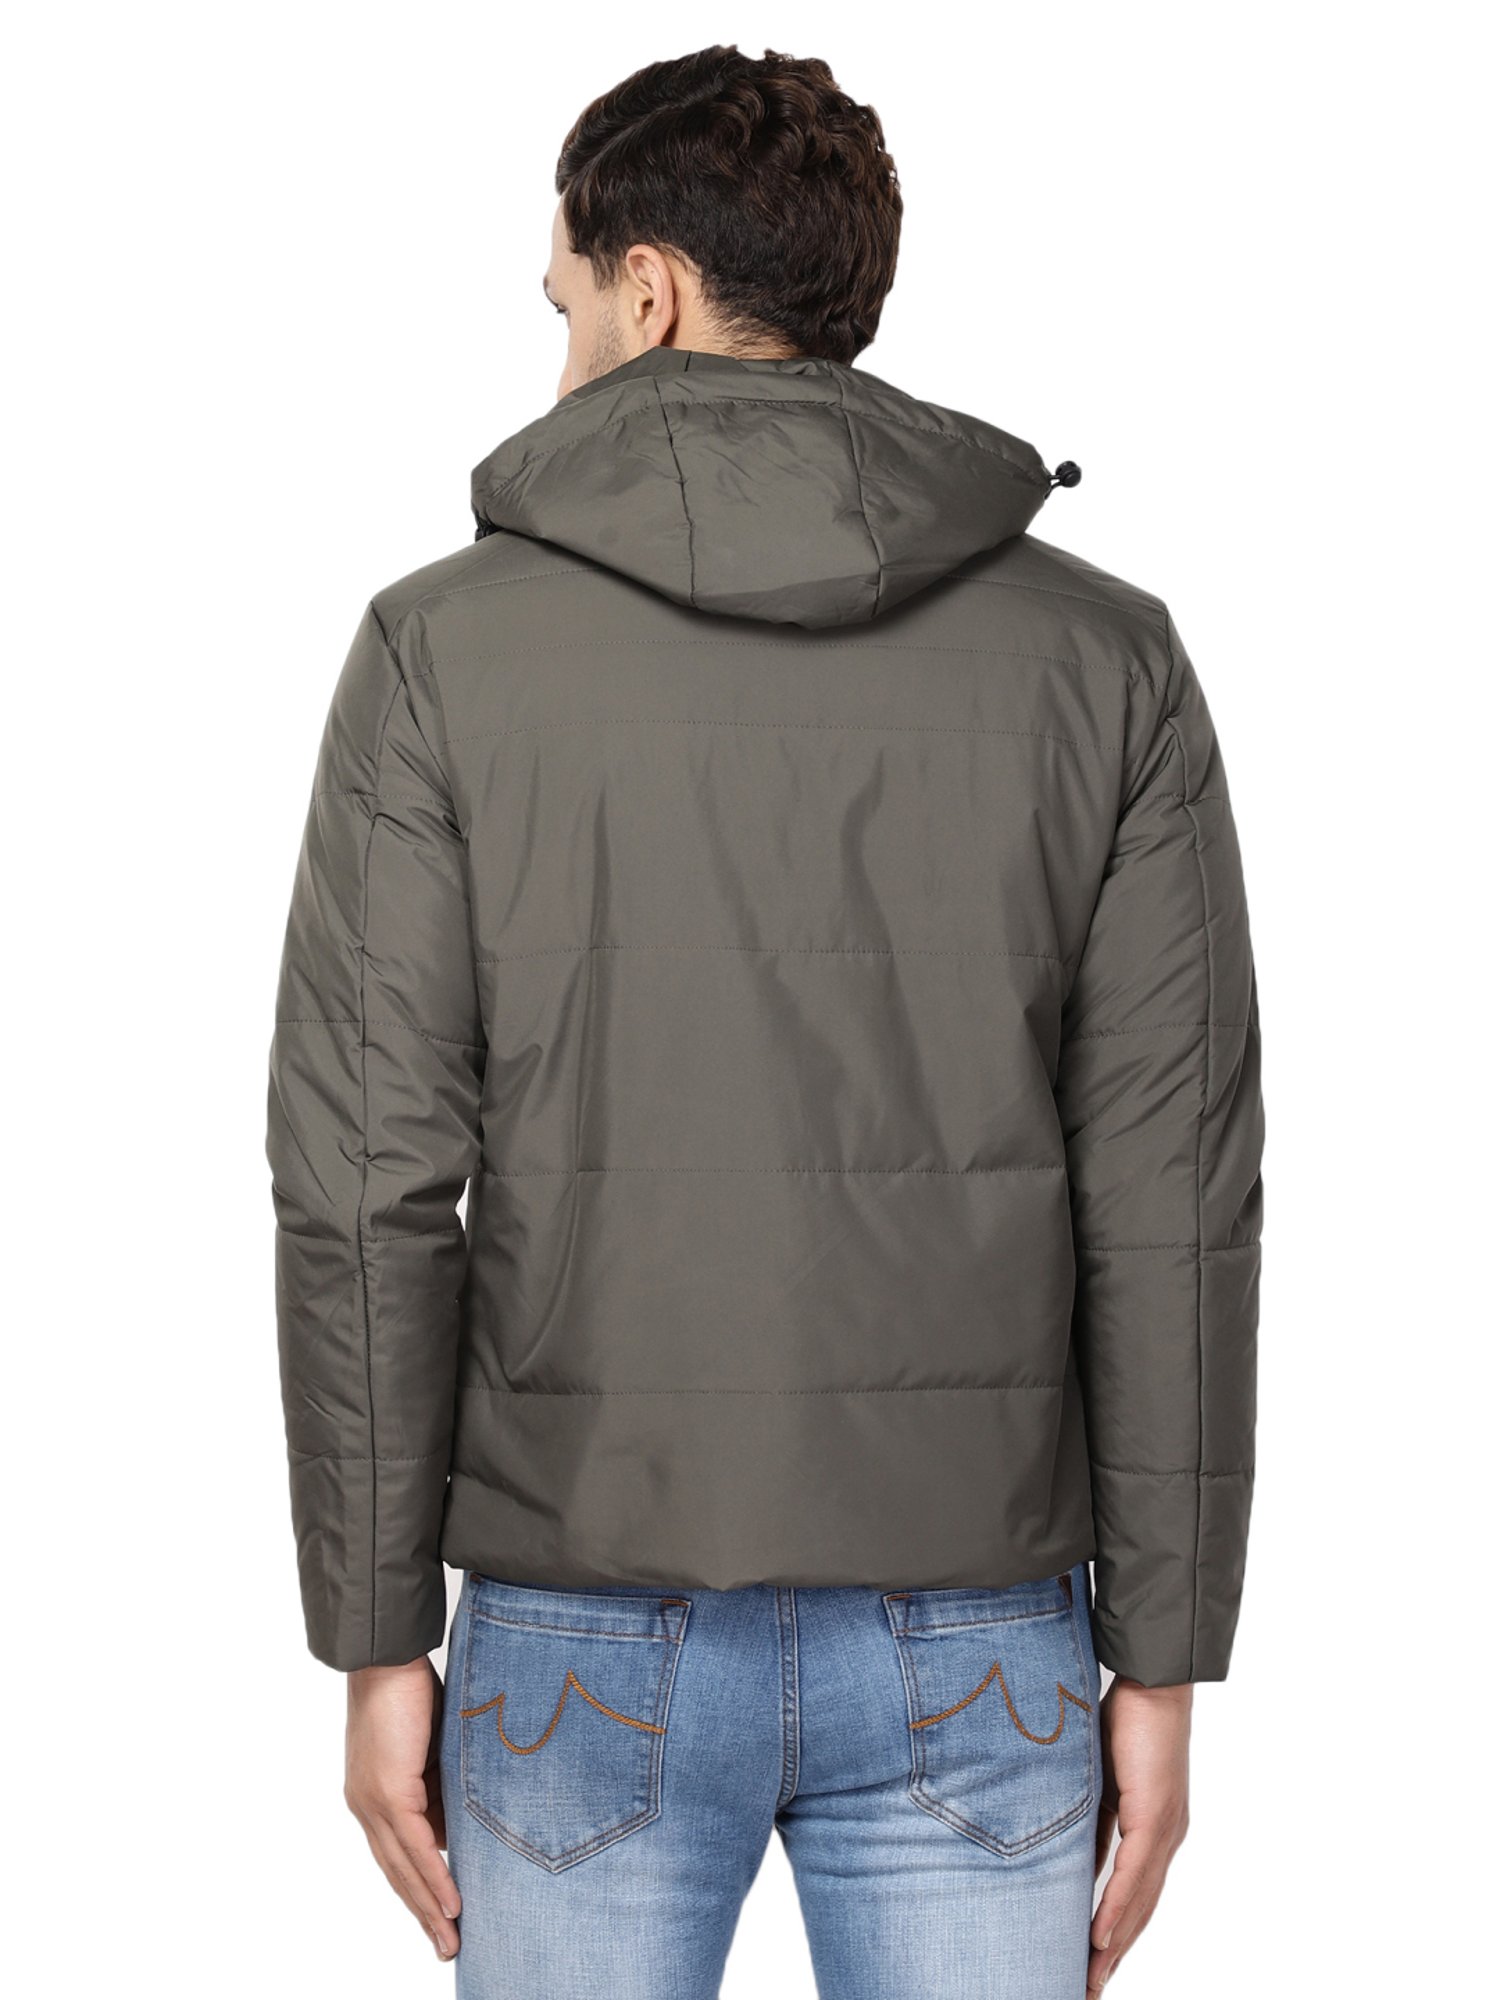 Buy Duke Black Slim Fit Hooded Jacket for Mens Online @ Tata CLiQ